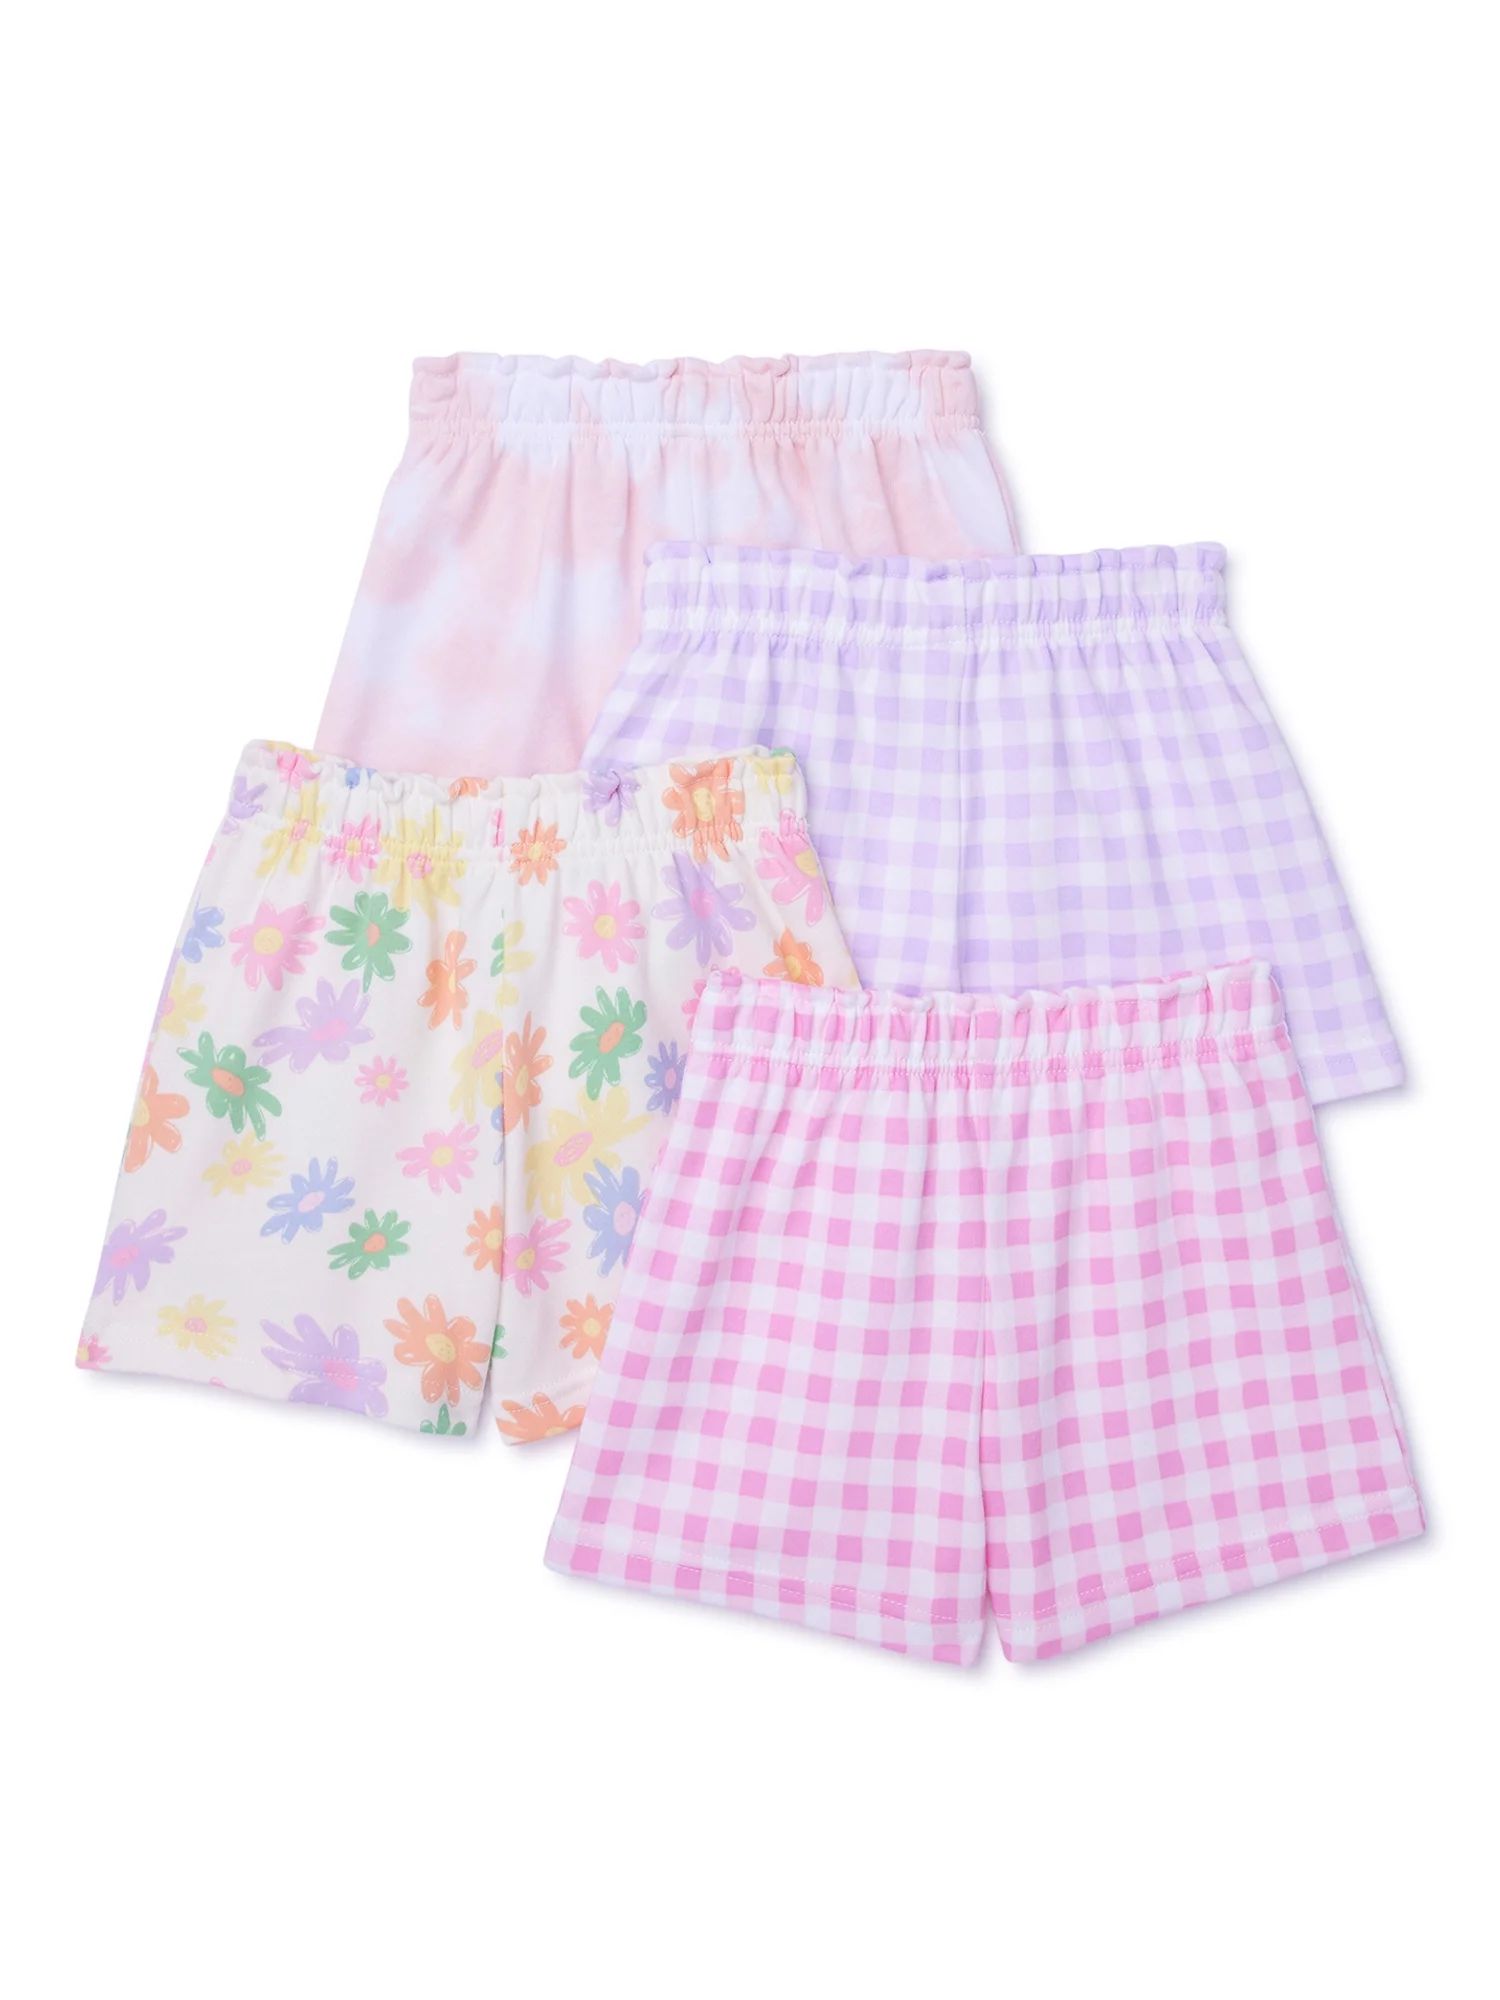 Garanimals Toddler Girl Printed Knit Shorts Multipack, 4-Pack, Sizes 18M-5T | Walmart (US)